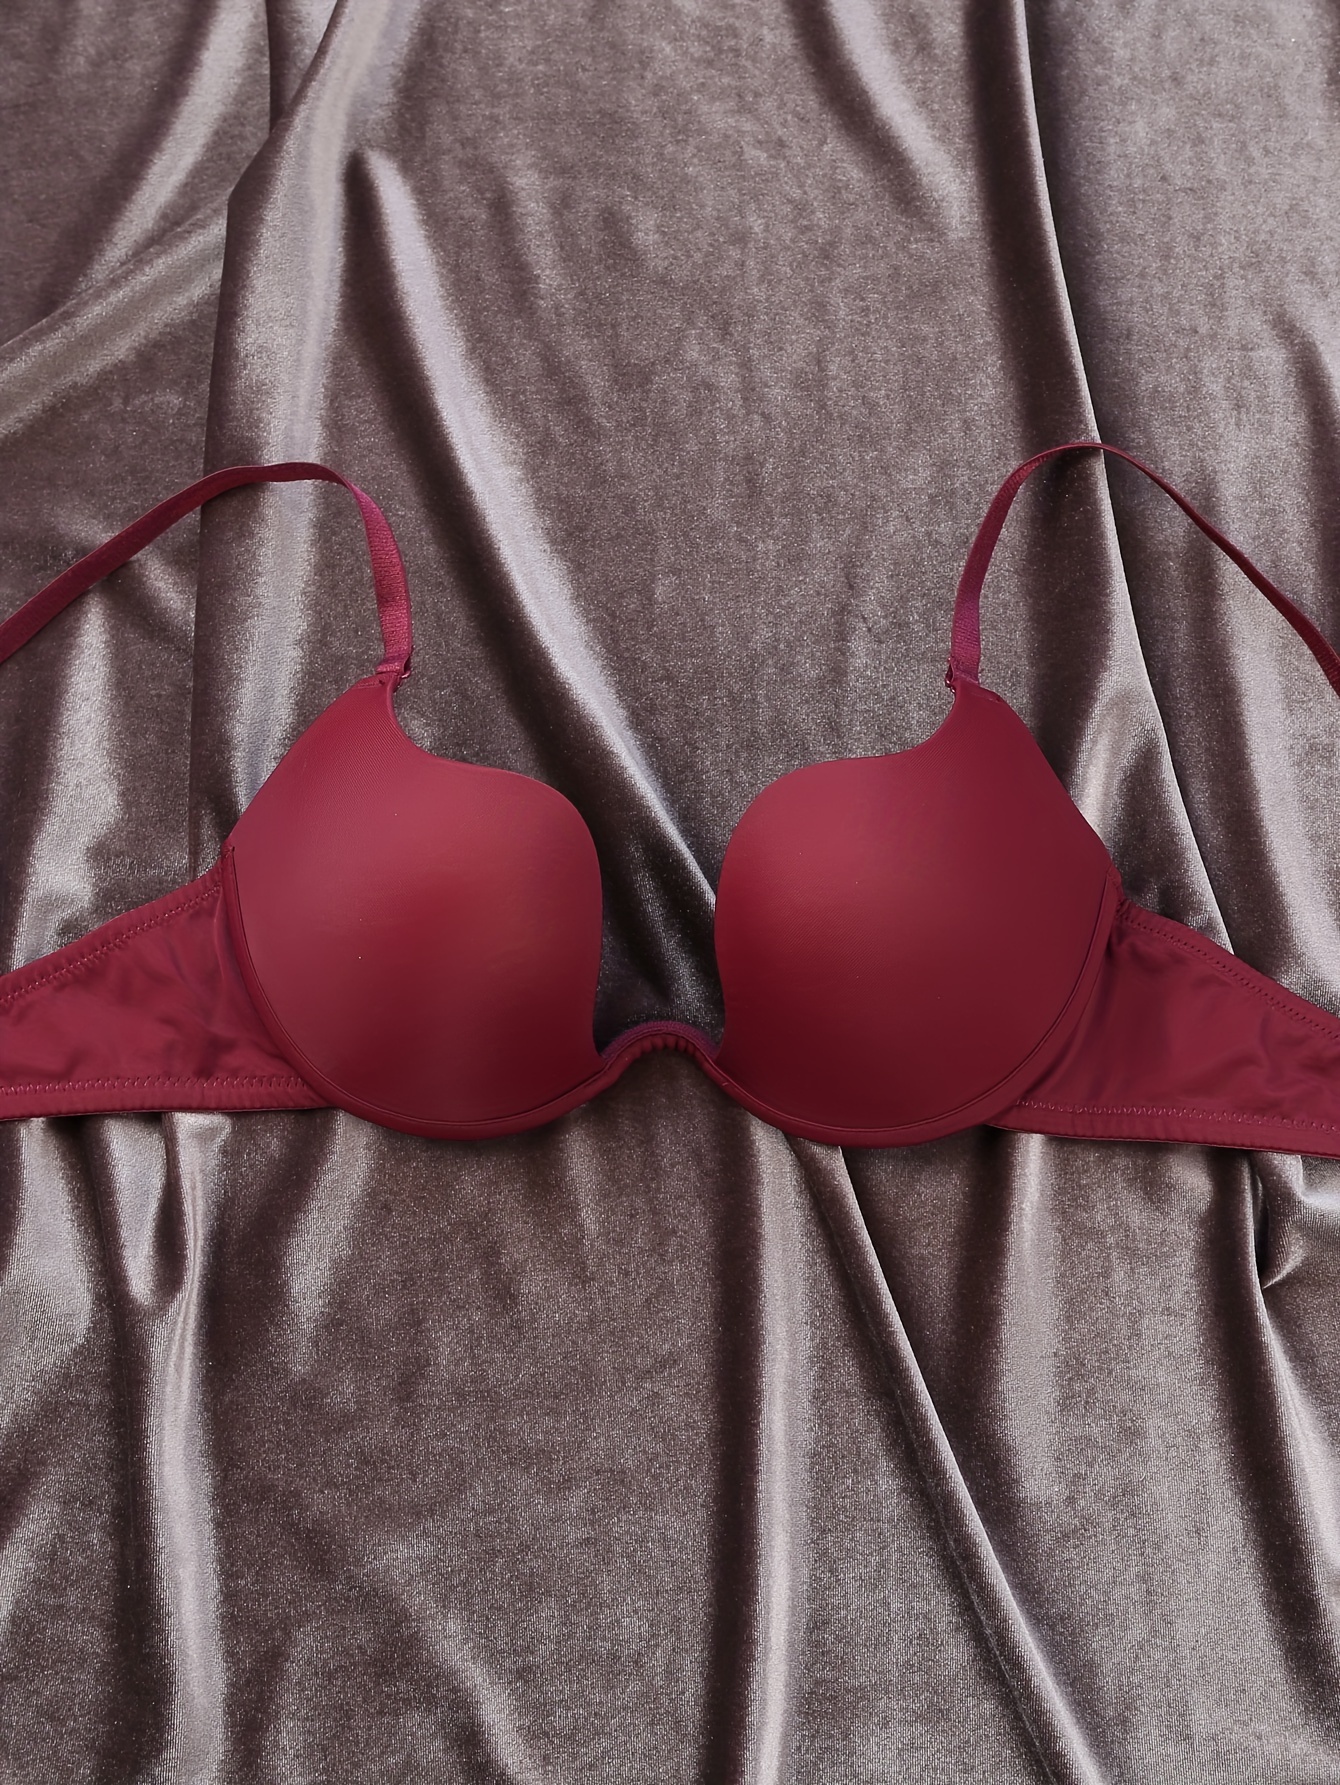 Victoria Secret 36DD BRA Perfect Shape Uplift Semi Demi biofit red